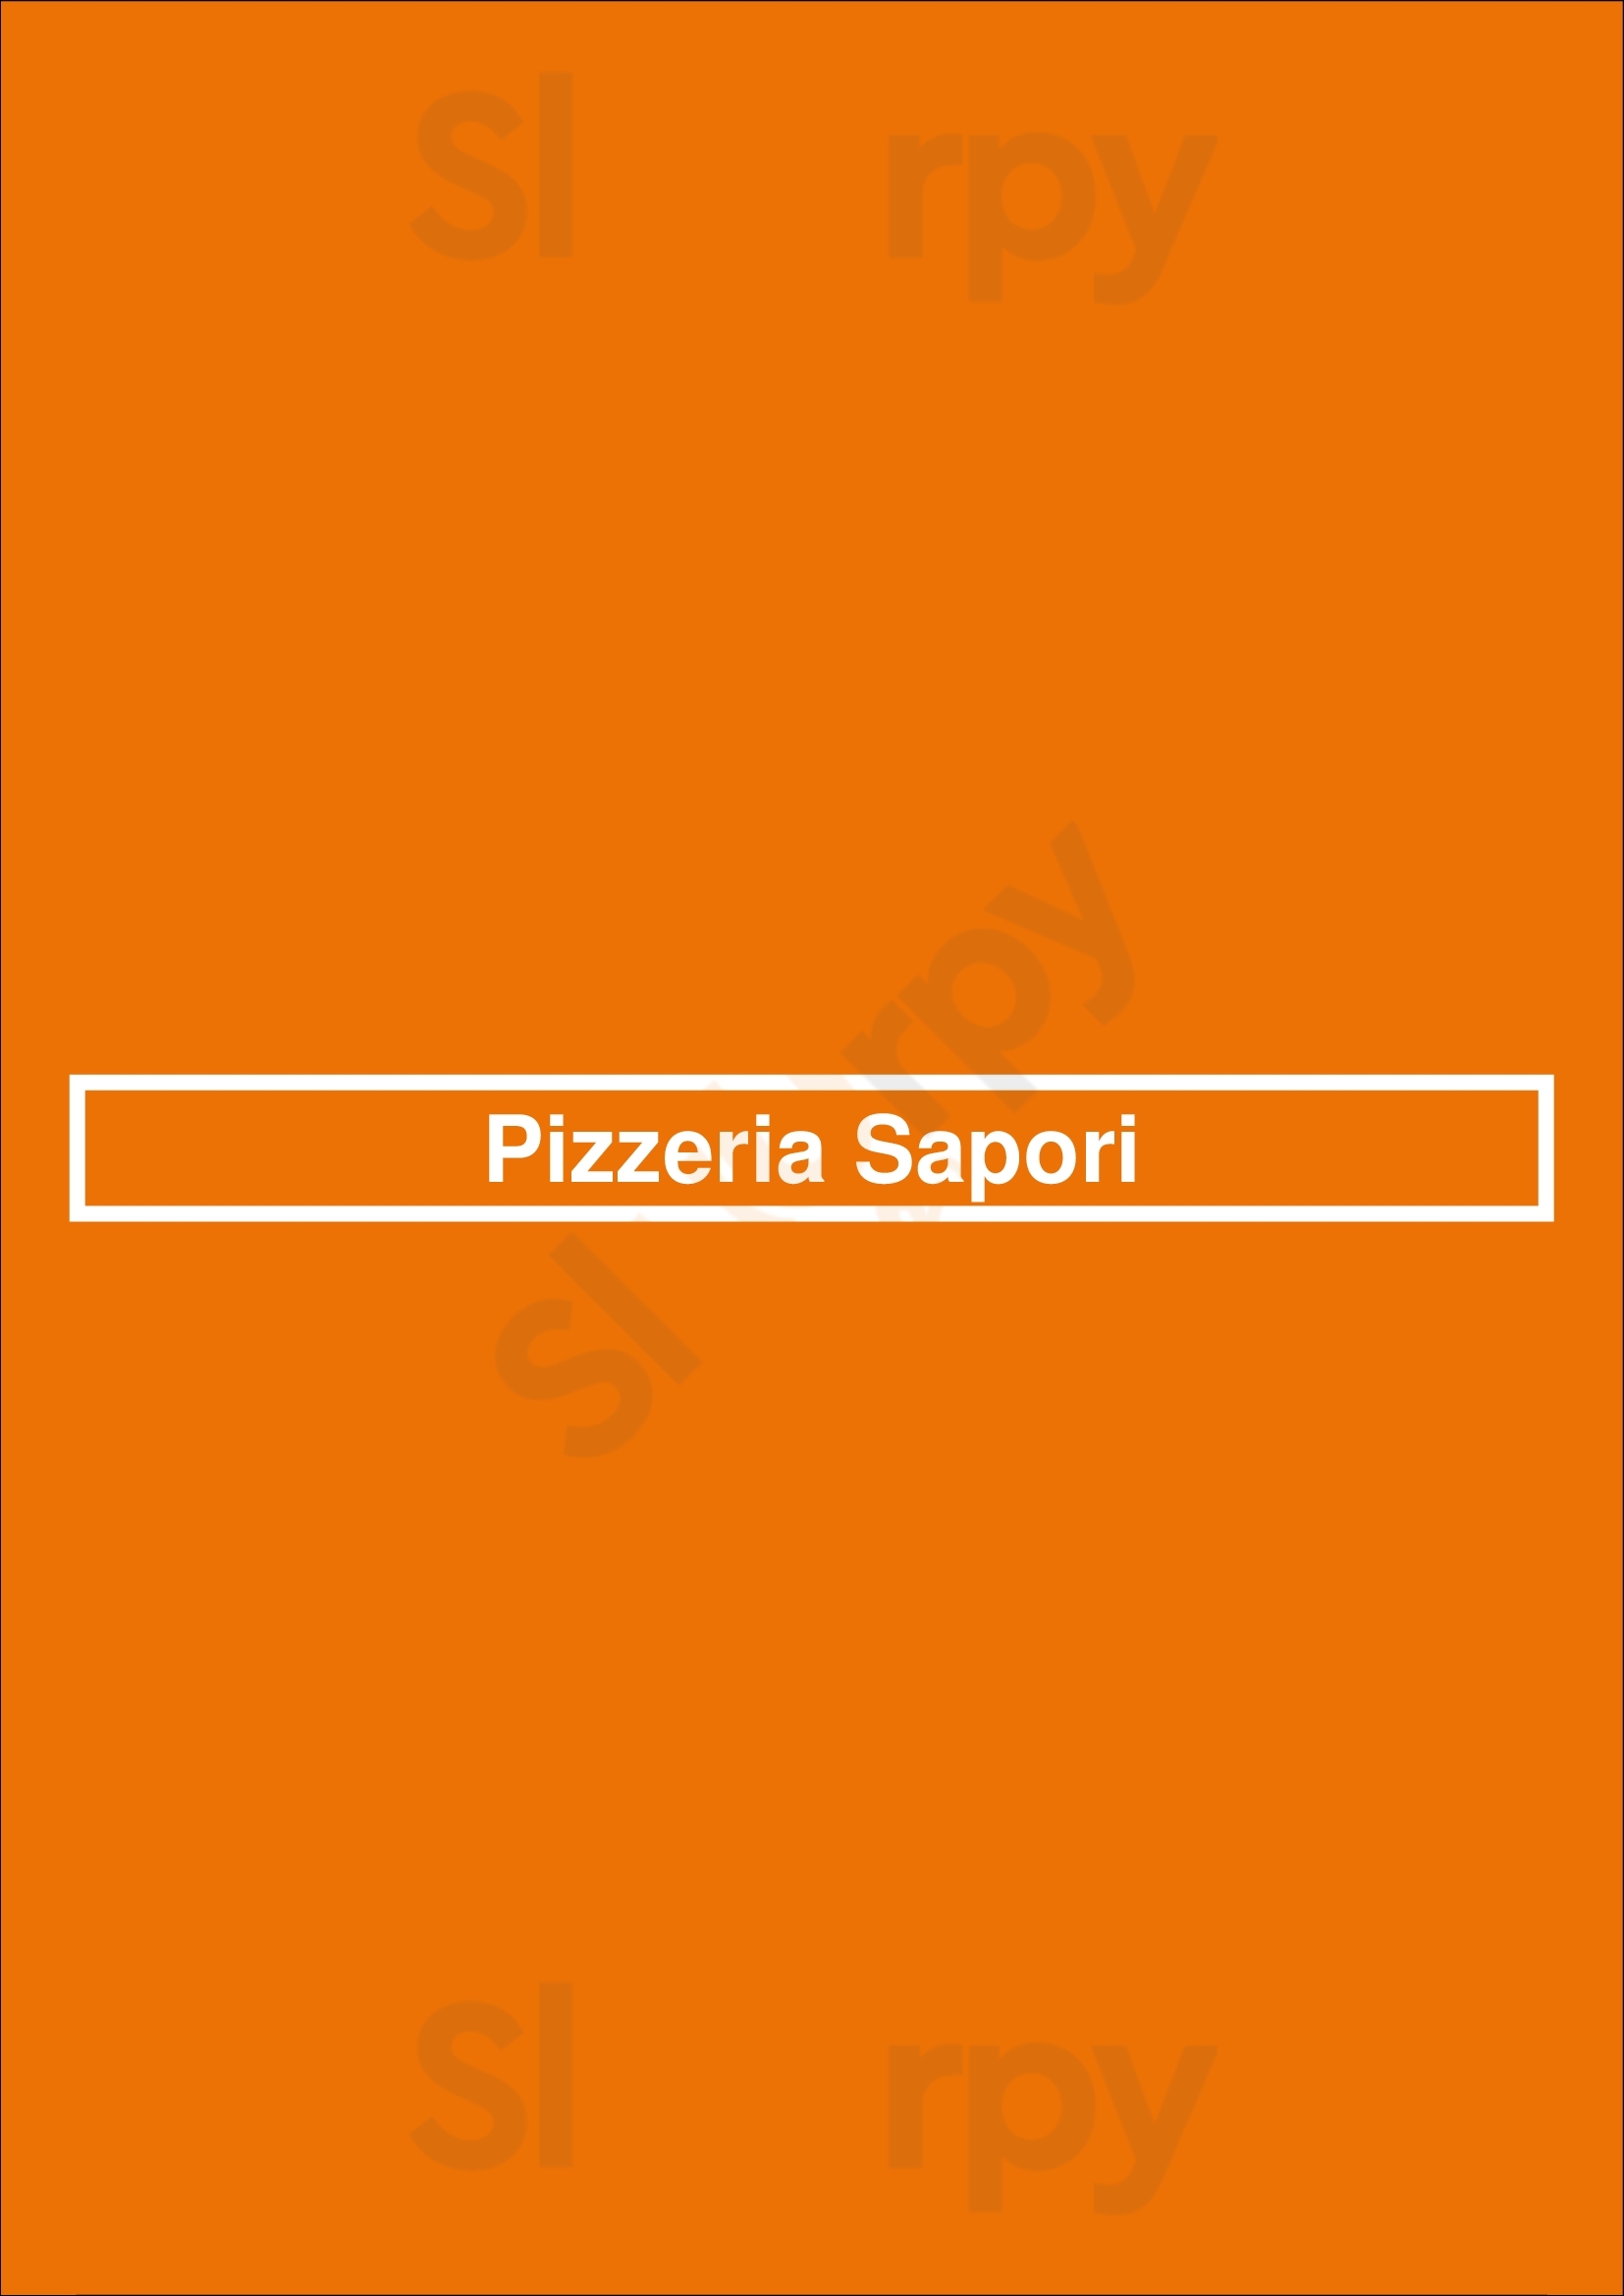 Pizzeria Sapori Newport Beach Menu - 1